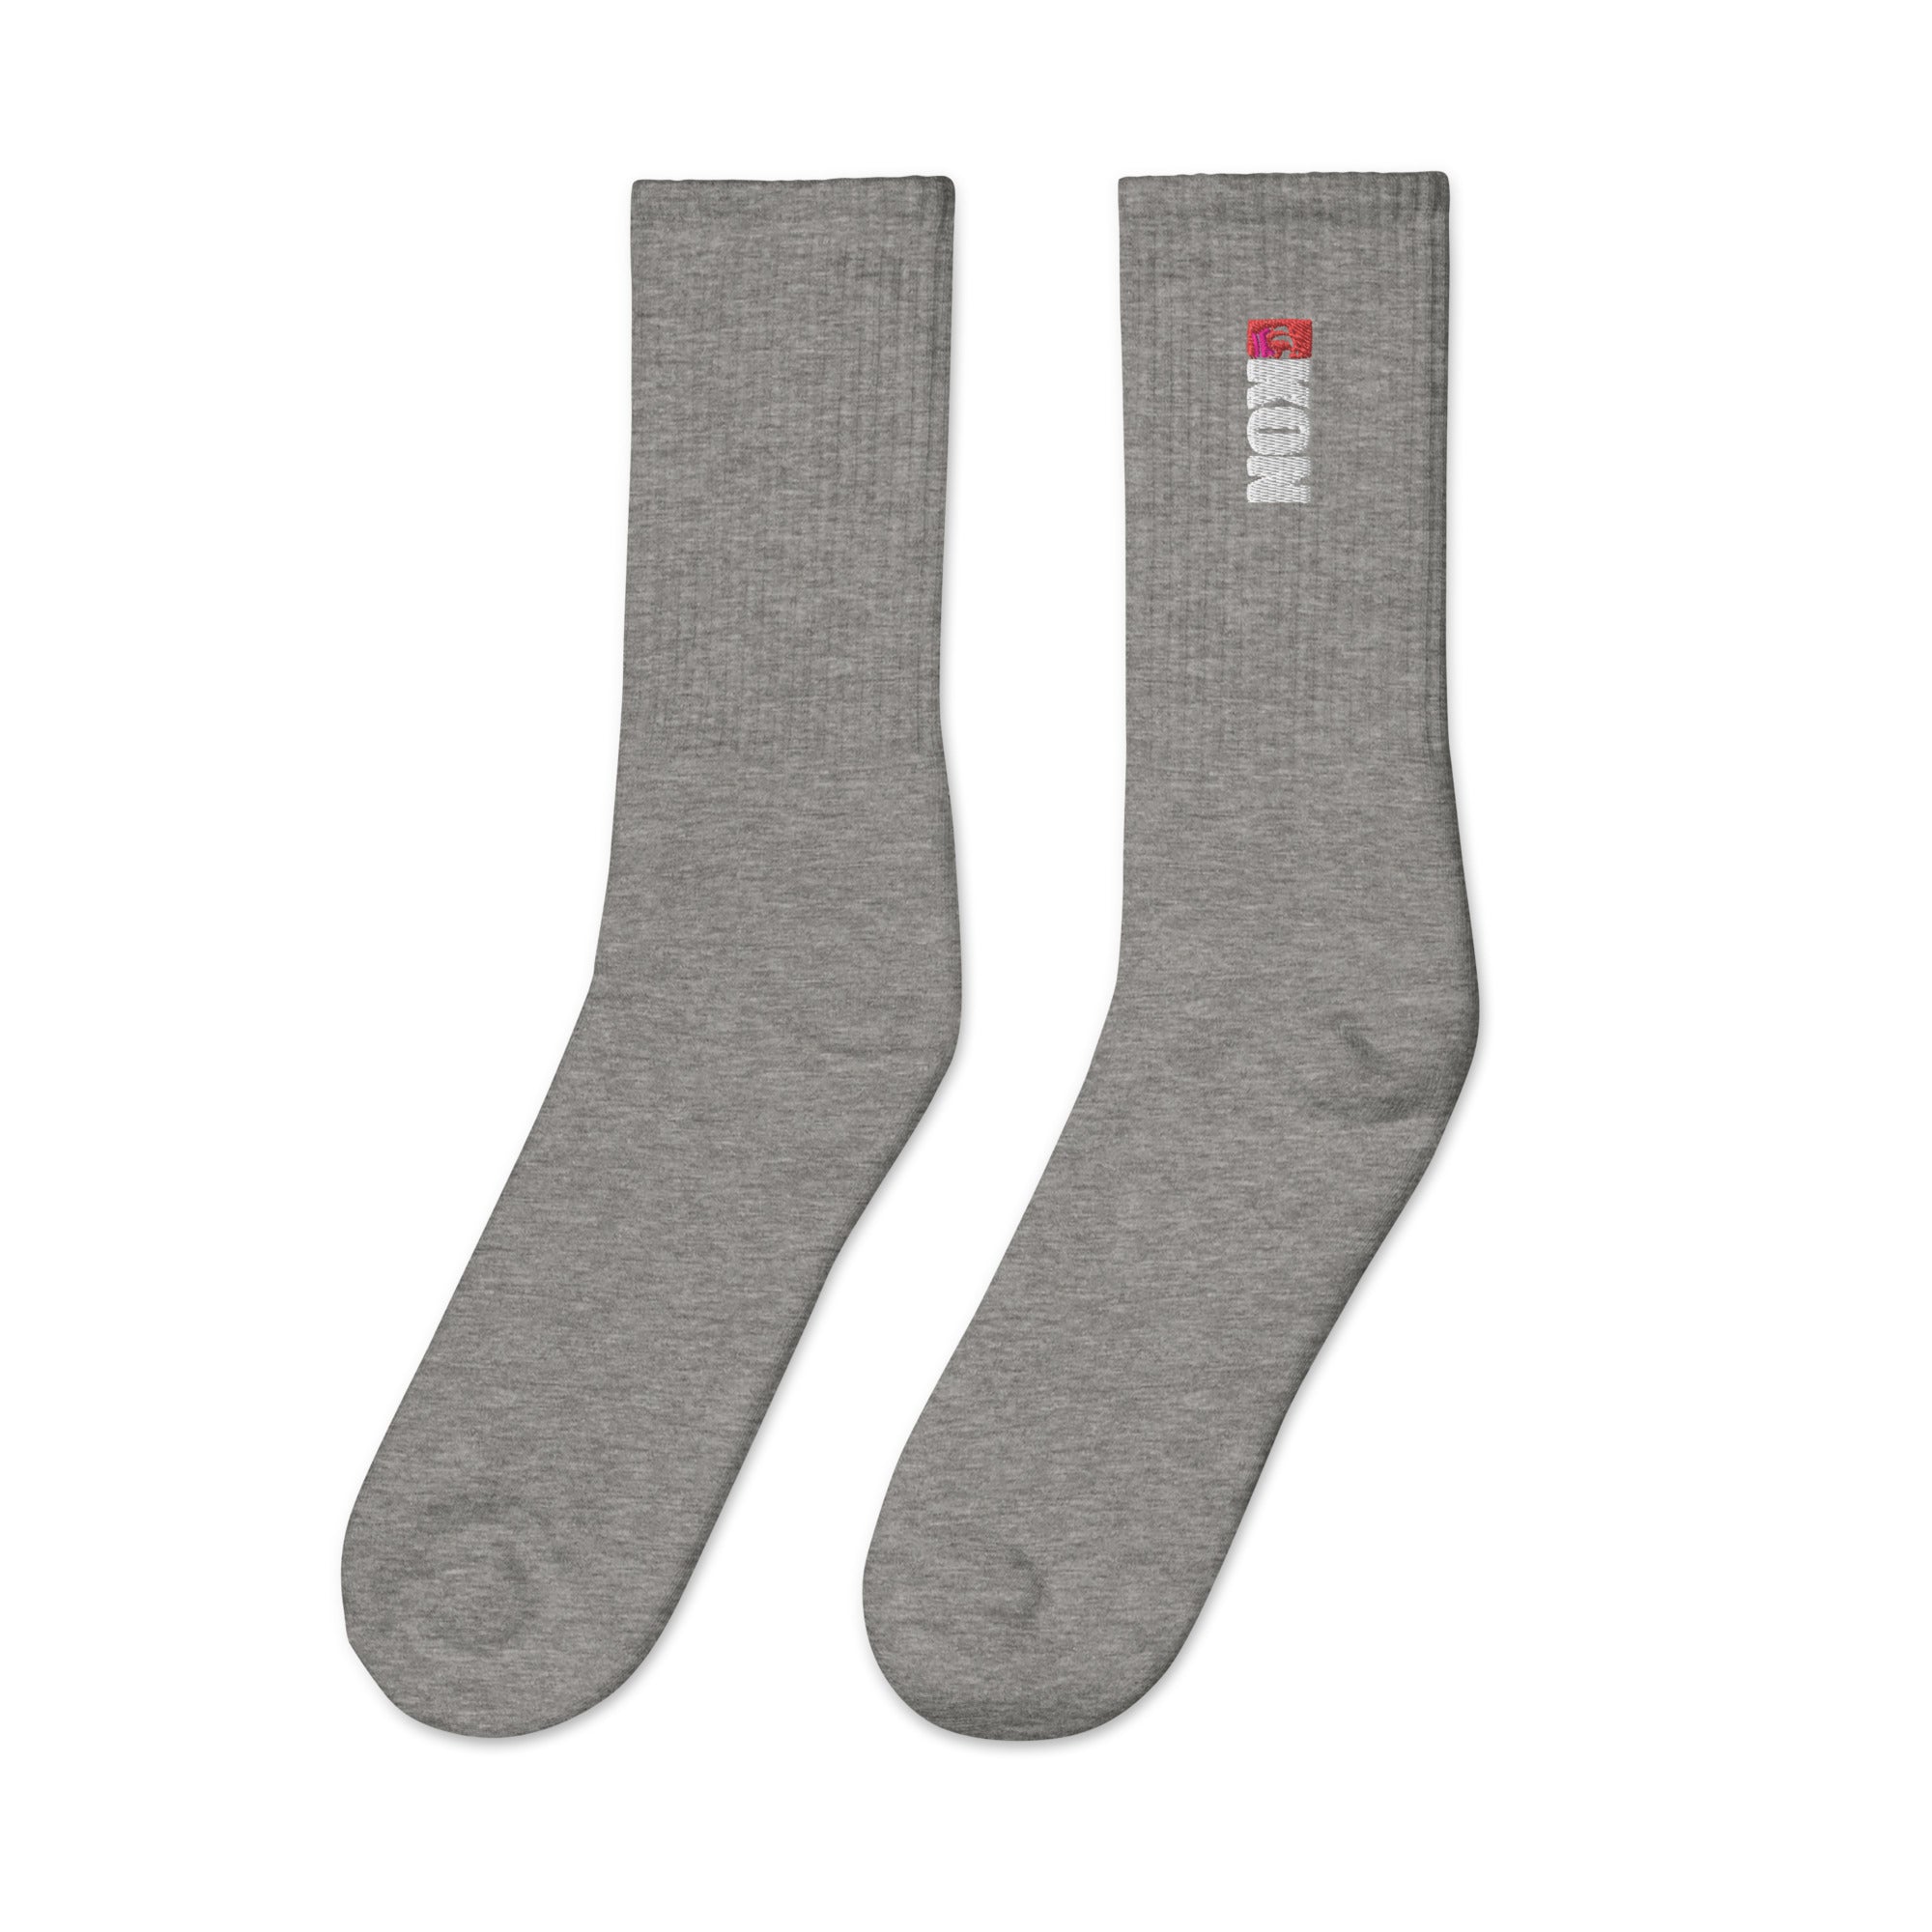 KON Embroidered socks